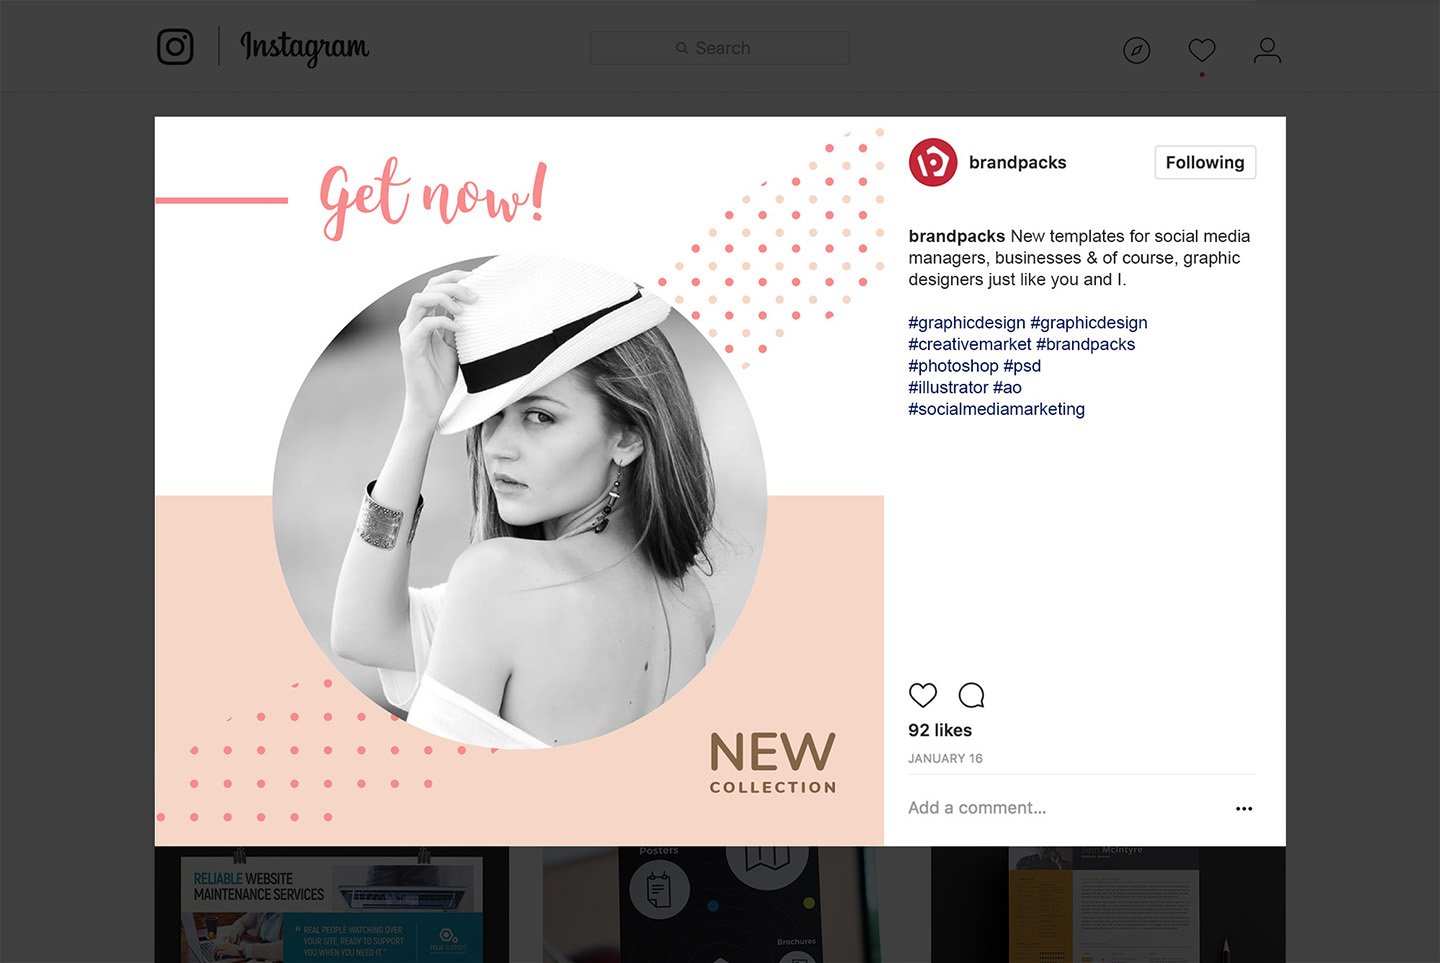 粉色系女性化妆品服装电商营销海报Instagram模板 Social Media Templates Pack Vol.5插图14